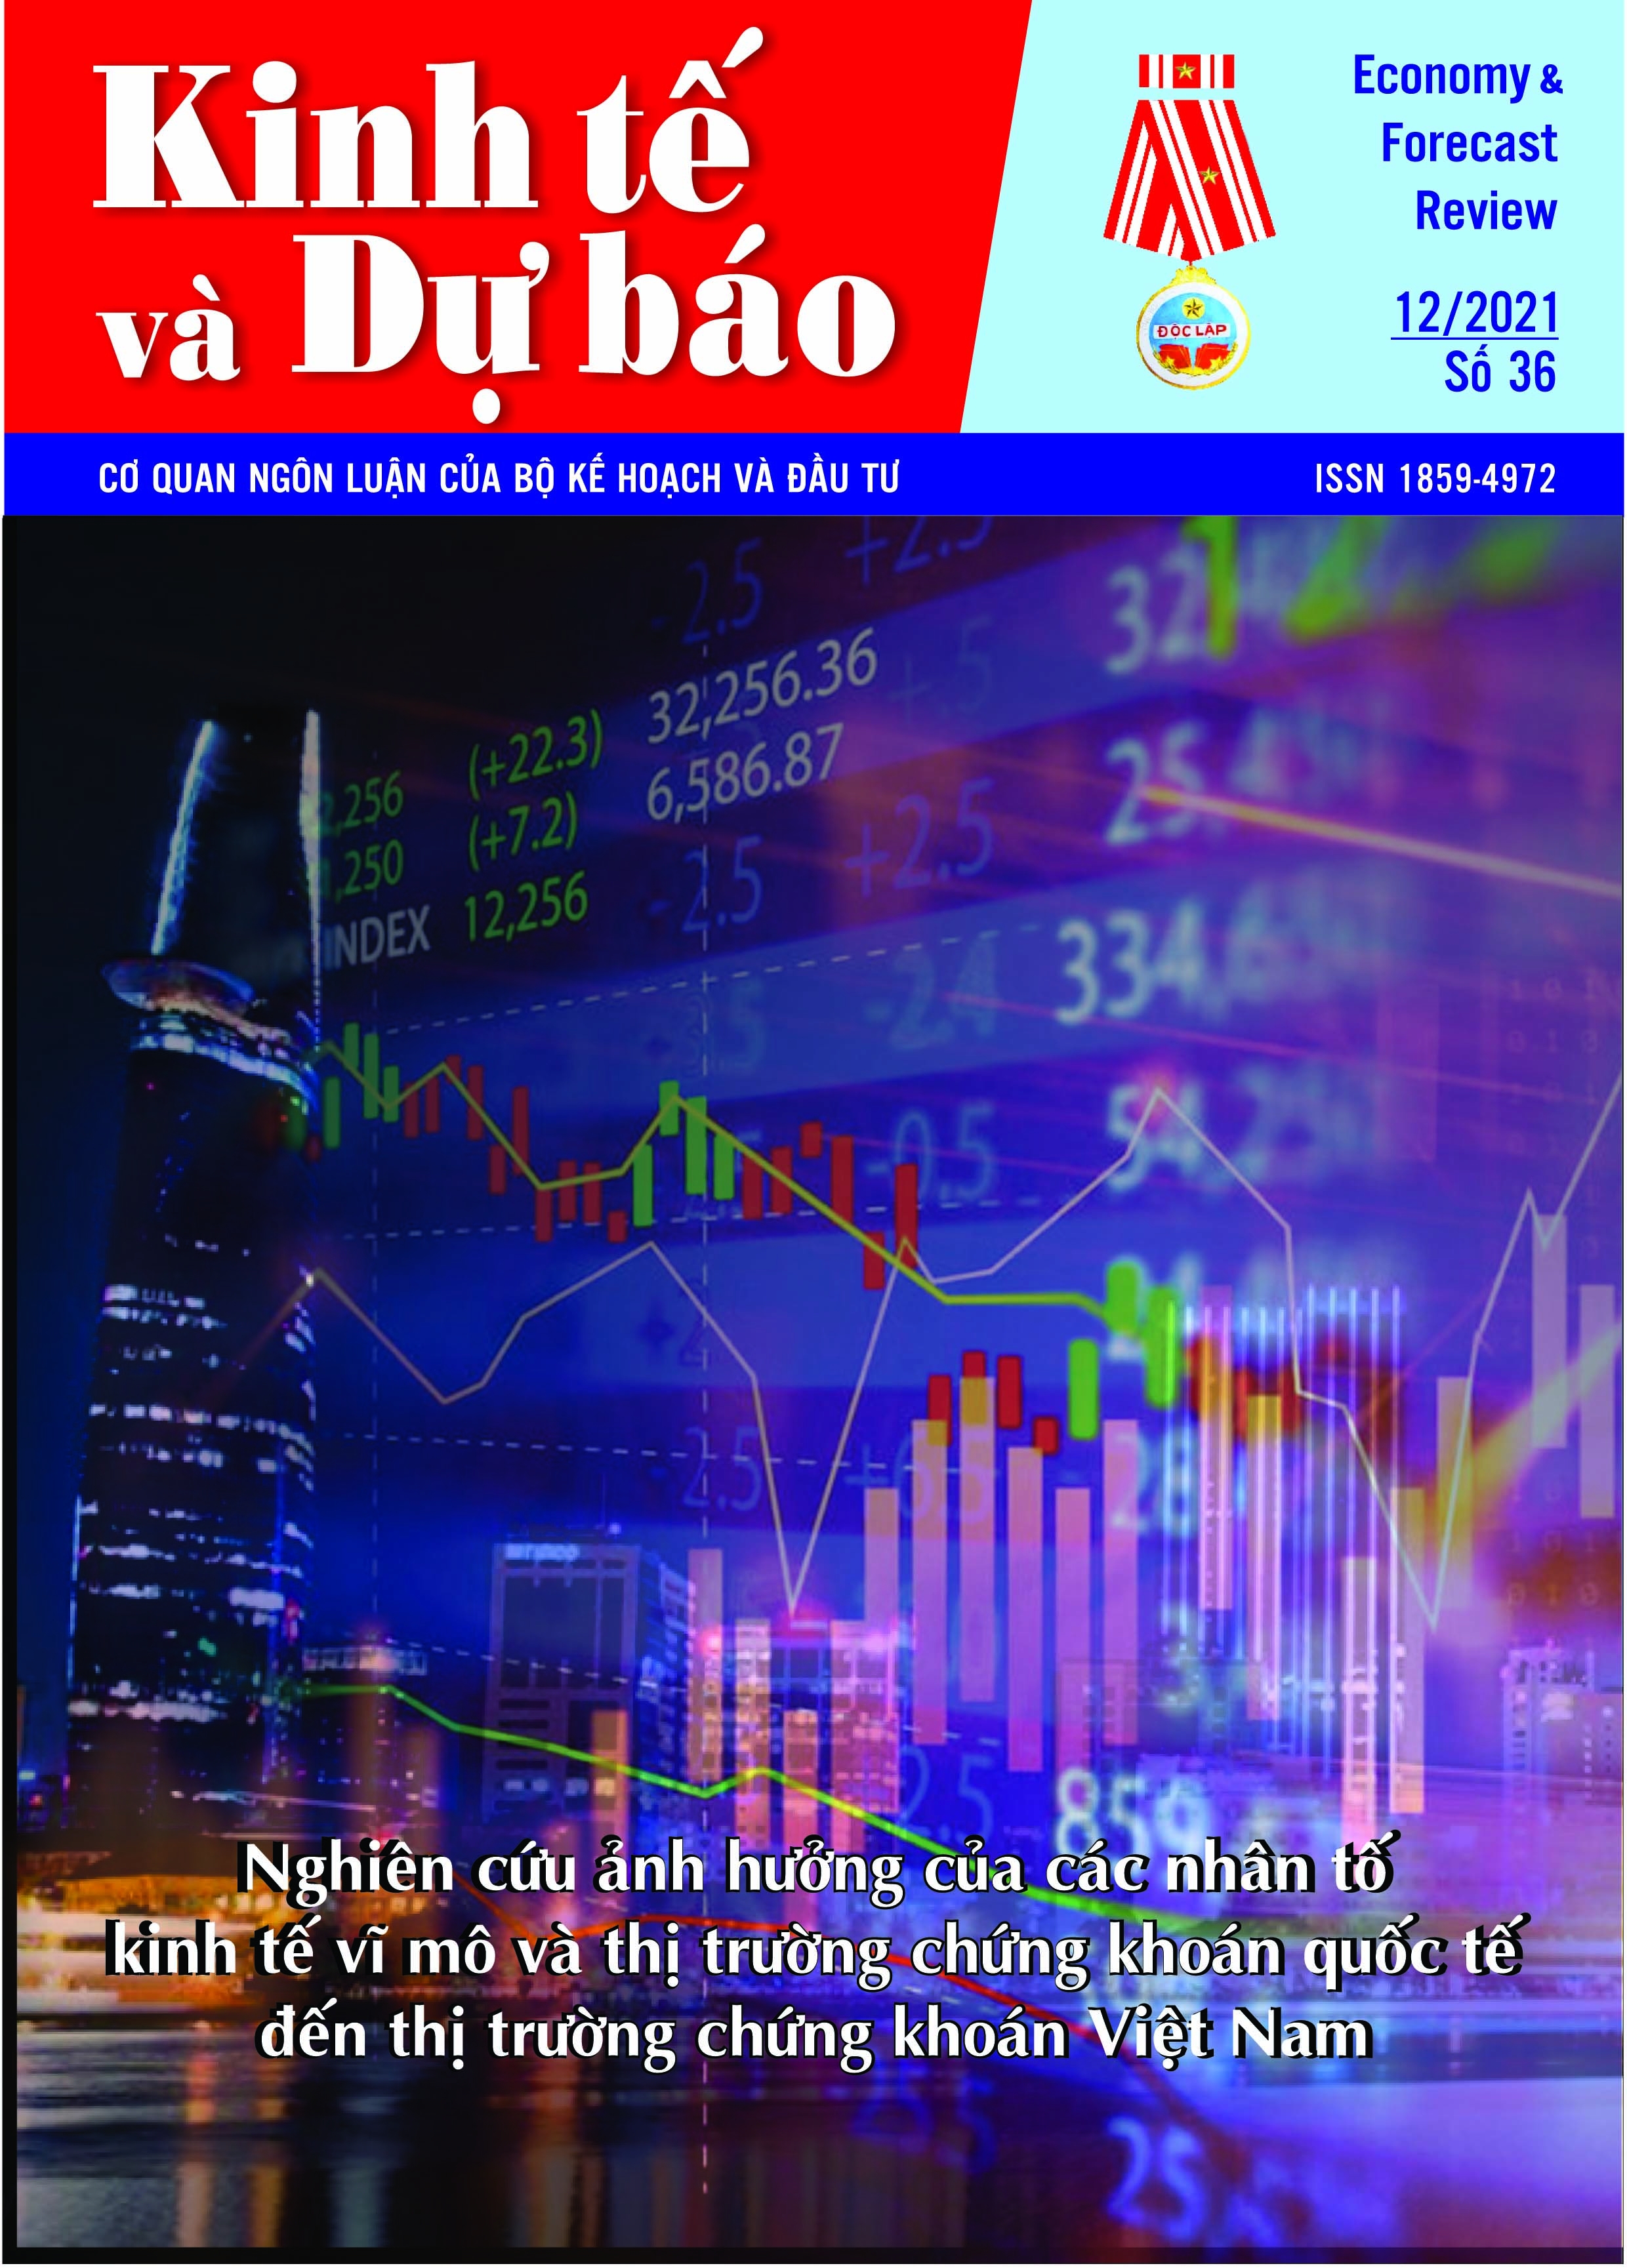 Giới thiệu Tạp chí Kinh tế và Dự báo số 36 (709)